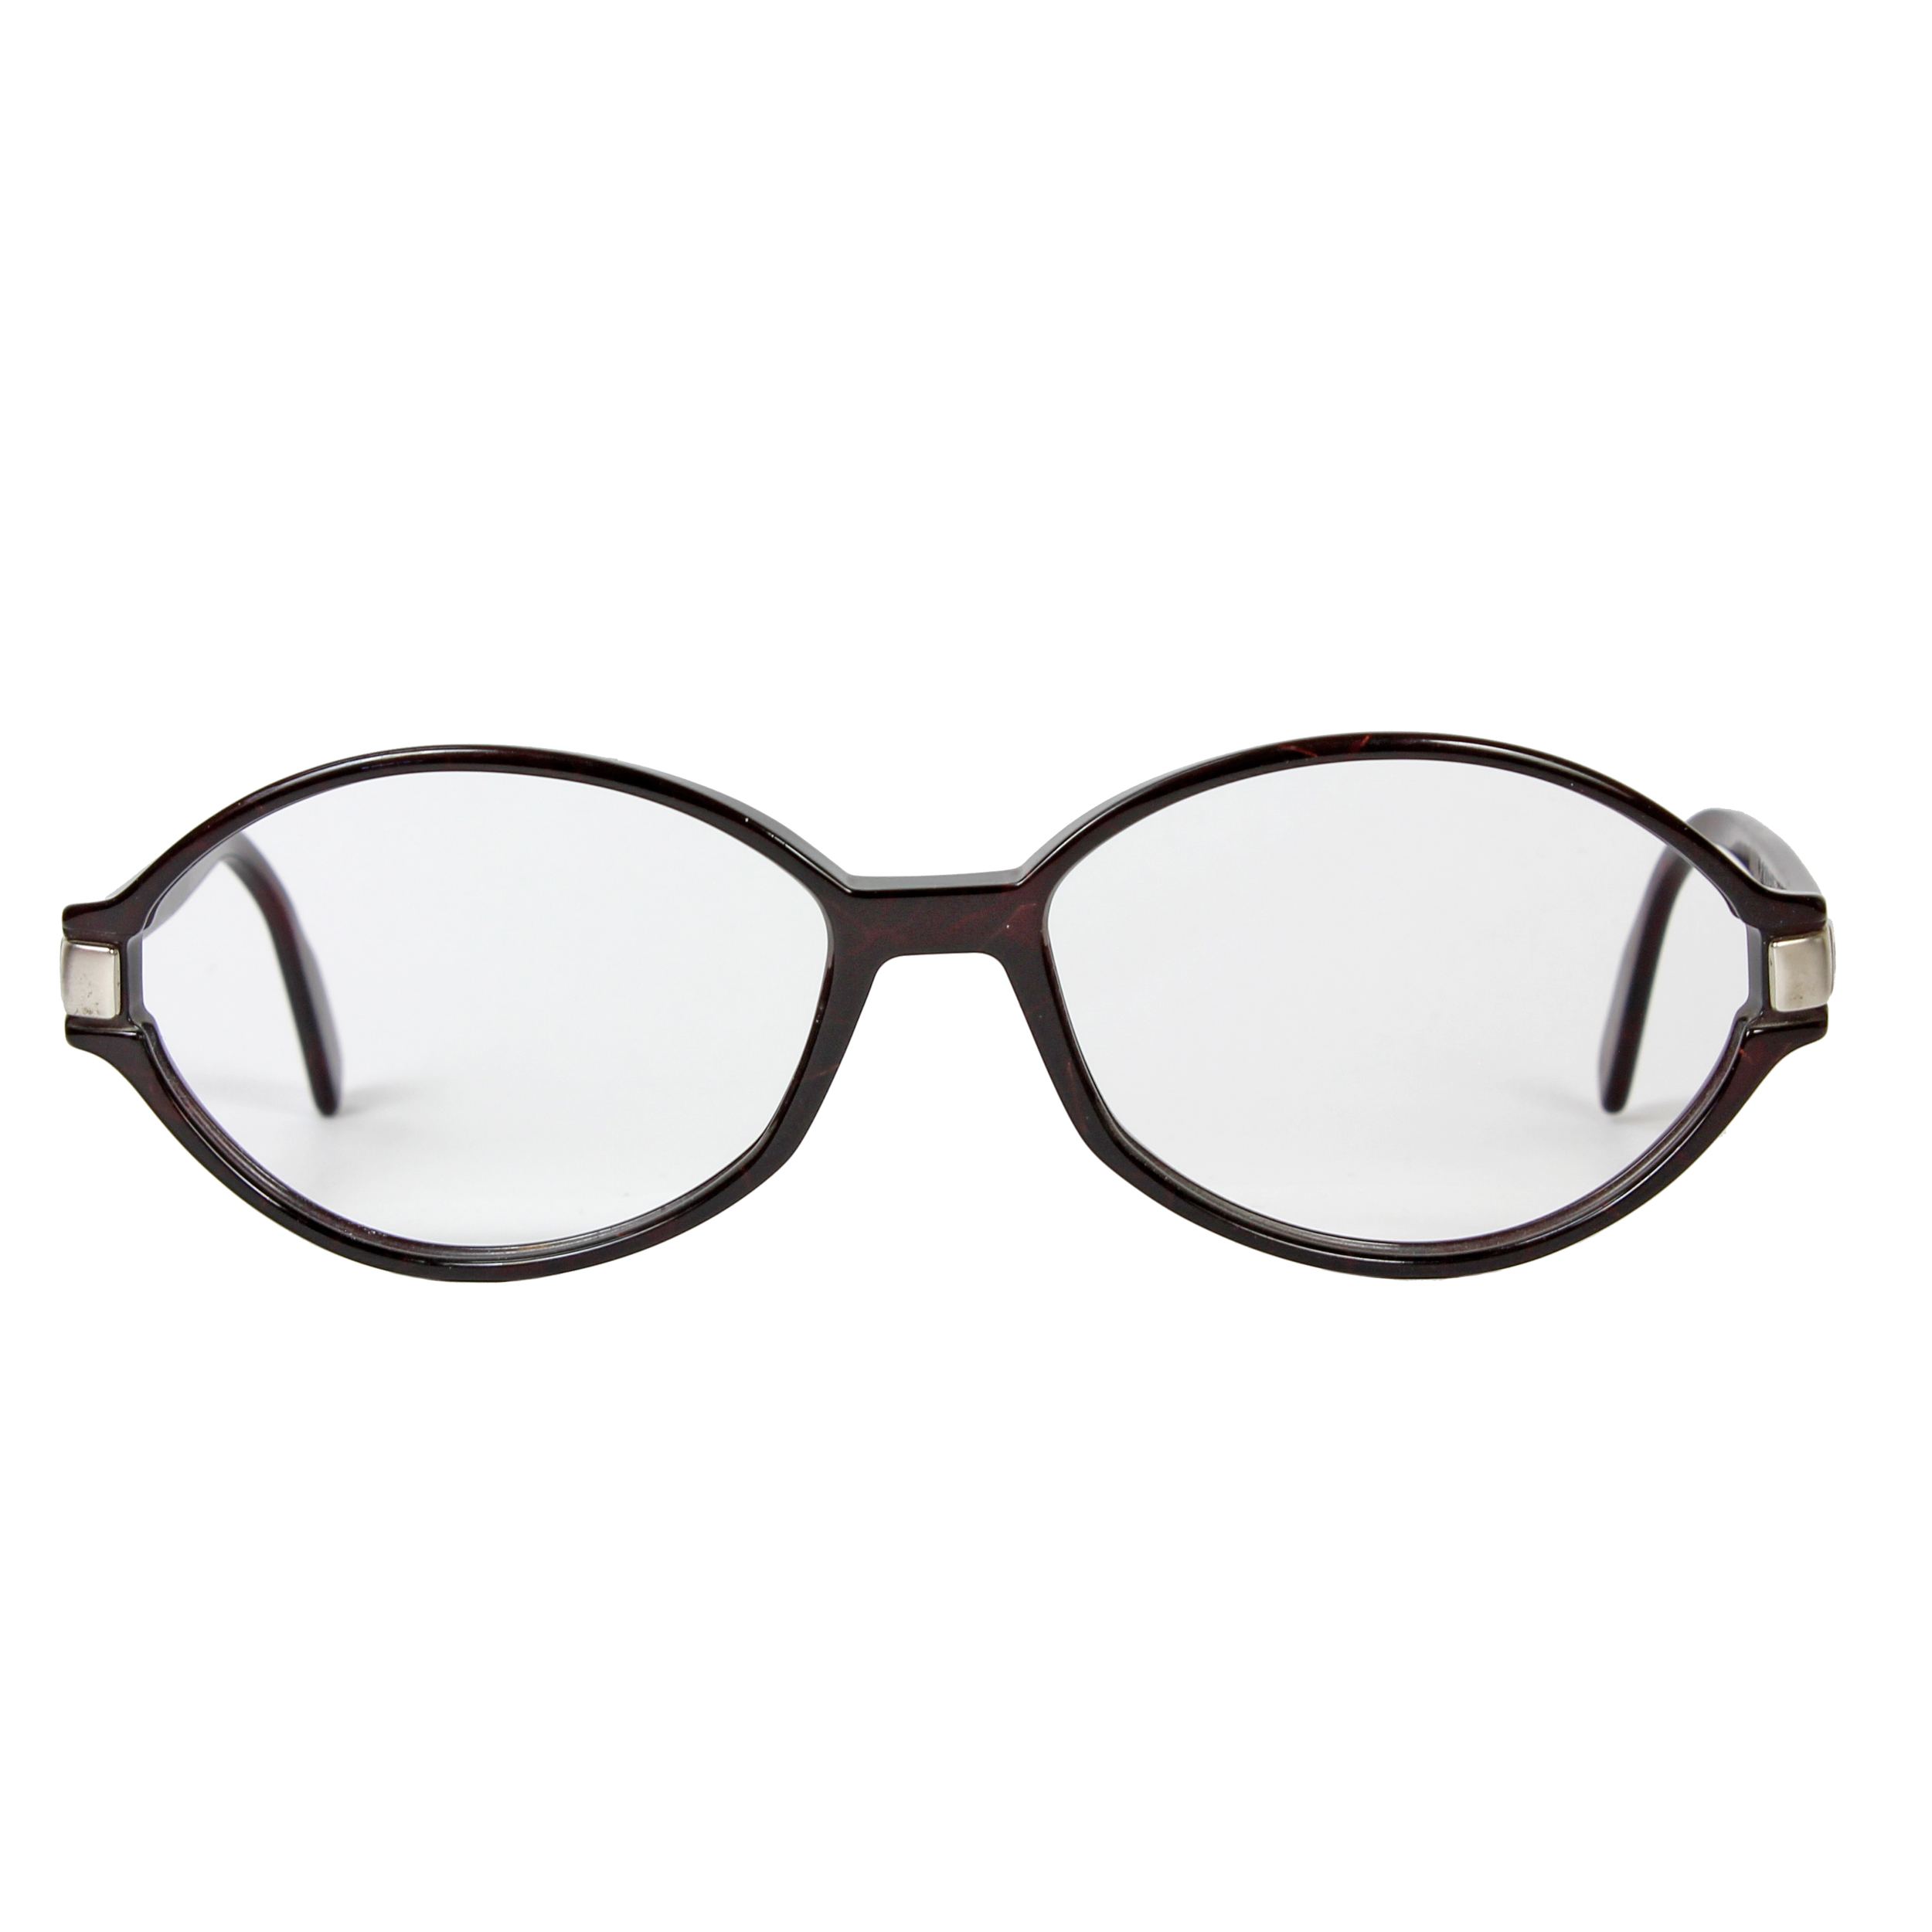 فریم عینک طبی رودن اشتوک مدل R7203 -  - 1